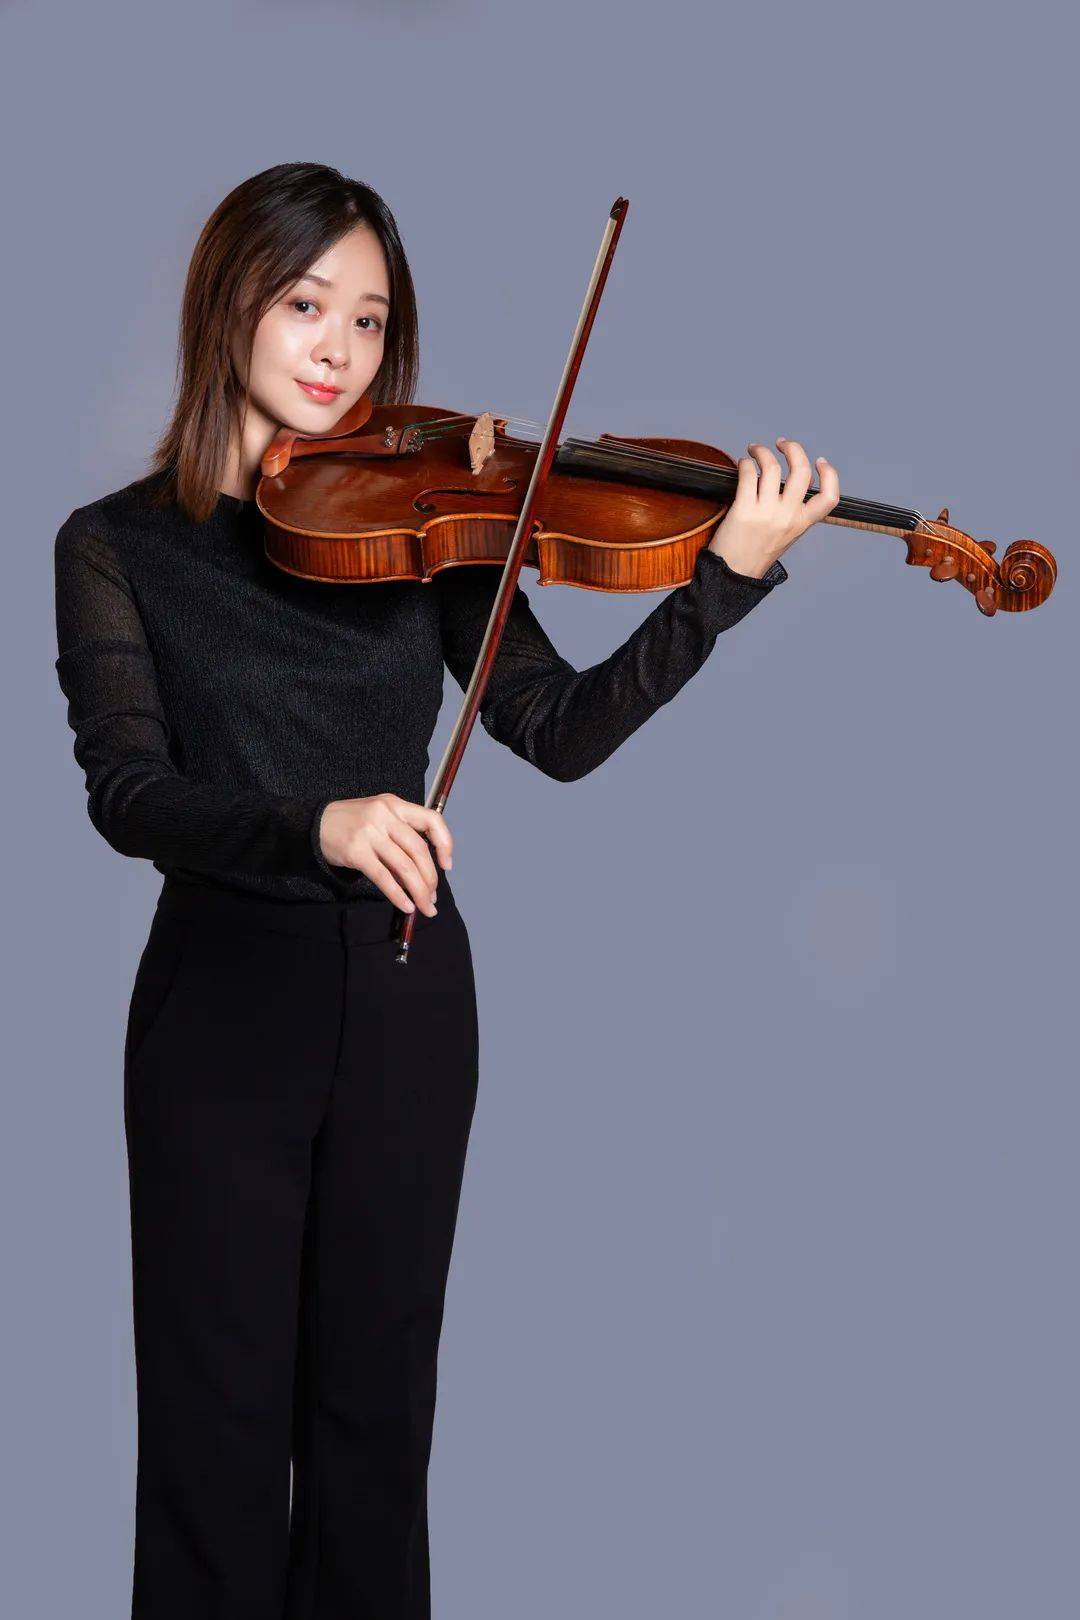 12月27日星期日音乐会音乐下午茶哈尔滨交响乐团中提琴声部专场音乐会